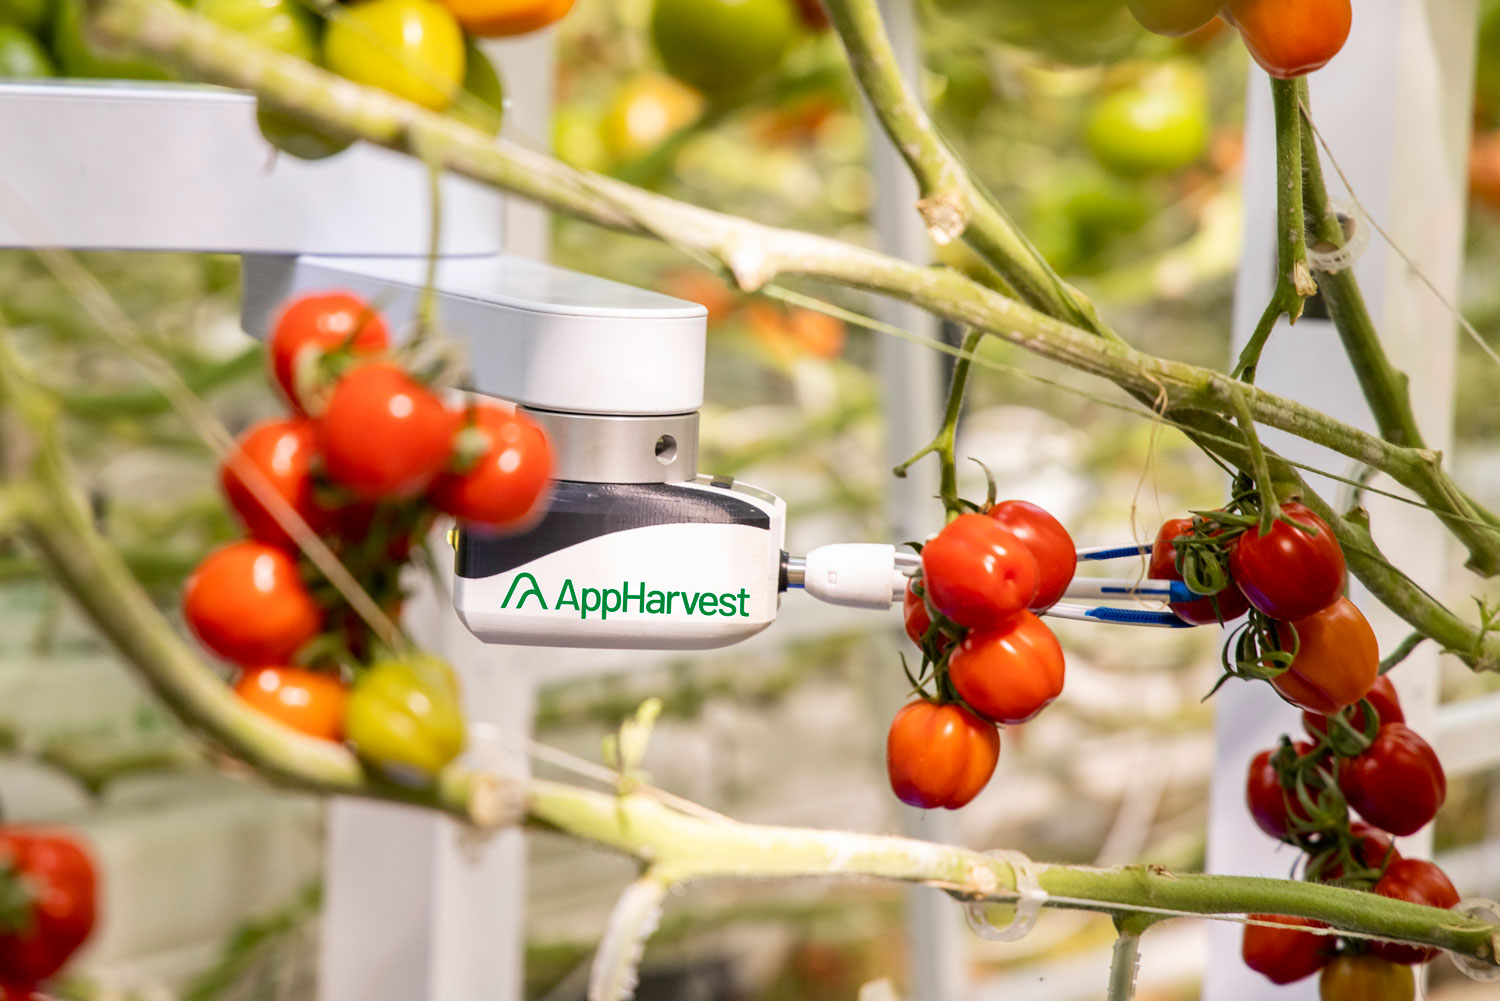 An AppHarvest robot picks vegetables.